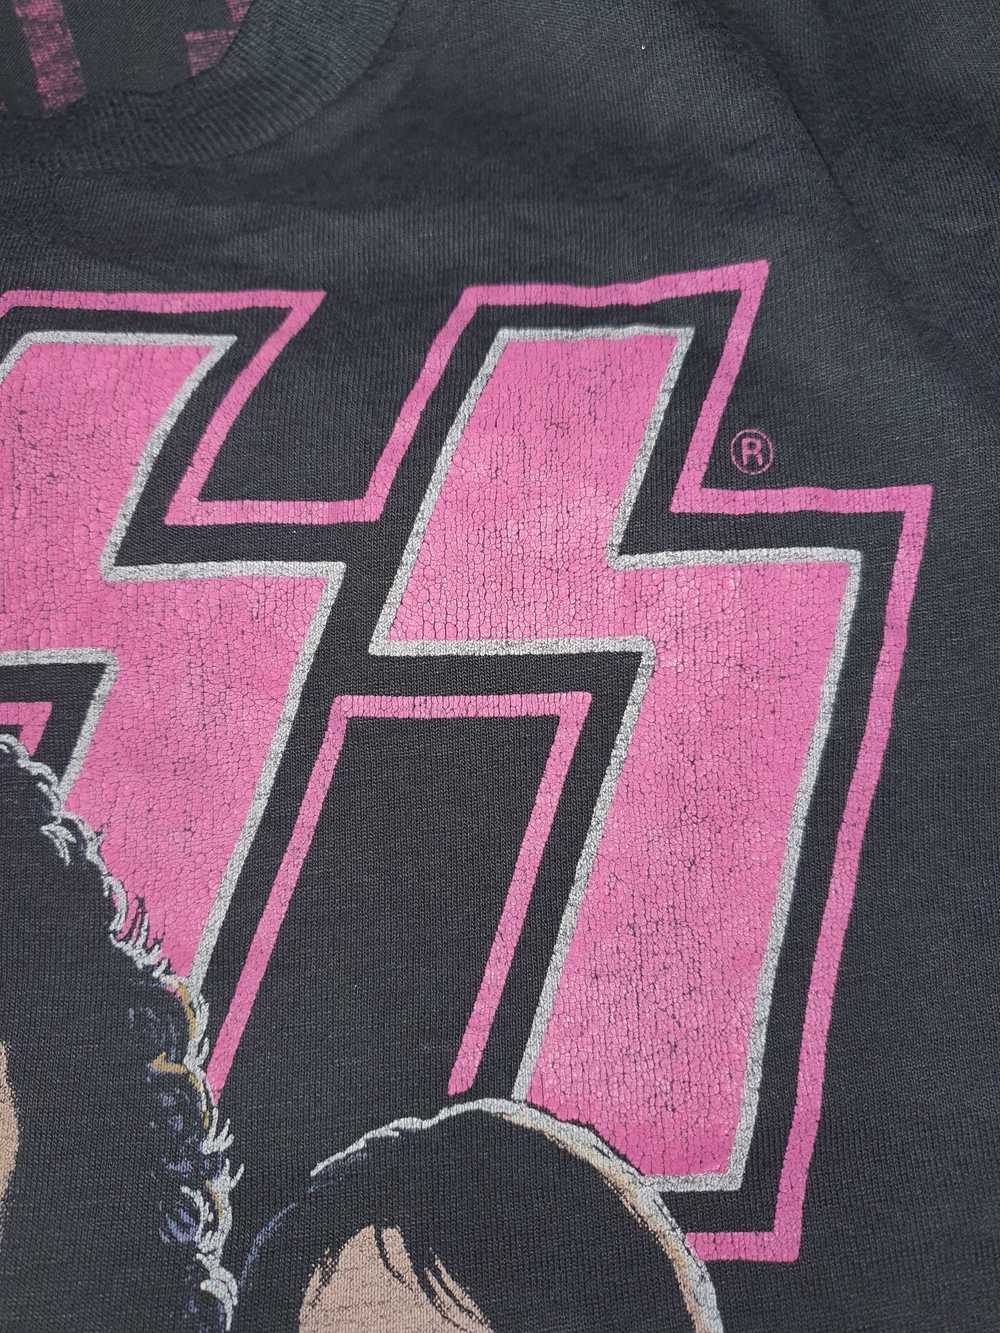 Kiss Band × Rare × Rock T Shirt Vintage shirt 80s… - image 6